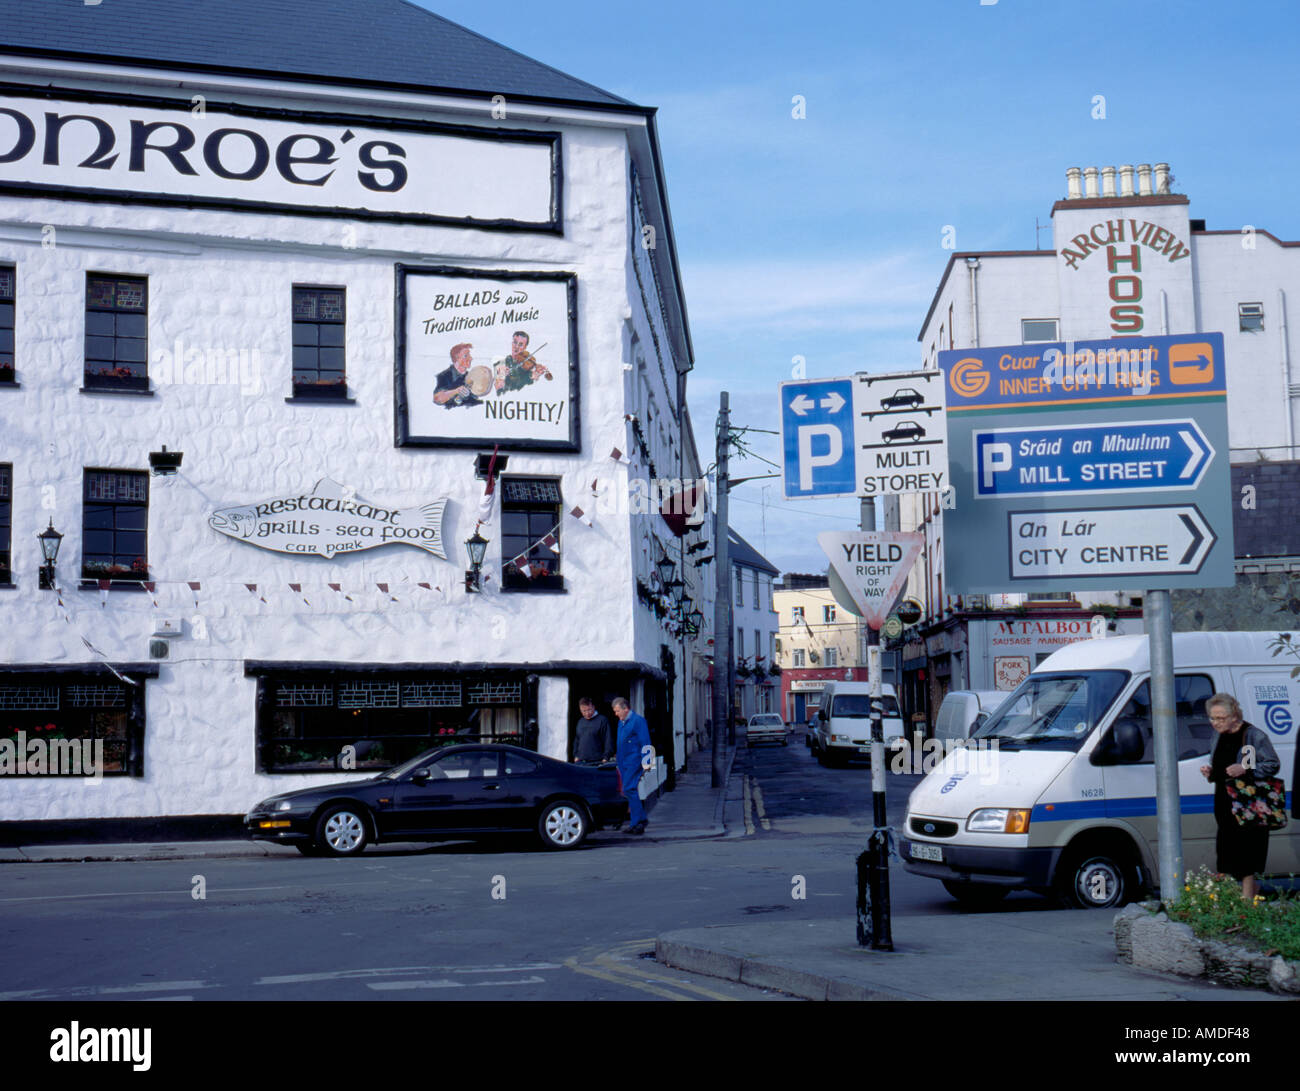 La langue gaélique et anglais signalisation routière près de claddagh quay, Galway, comté de Galway, Irlande (Irlande). Banque D'Images